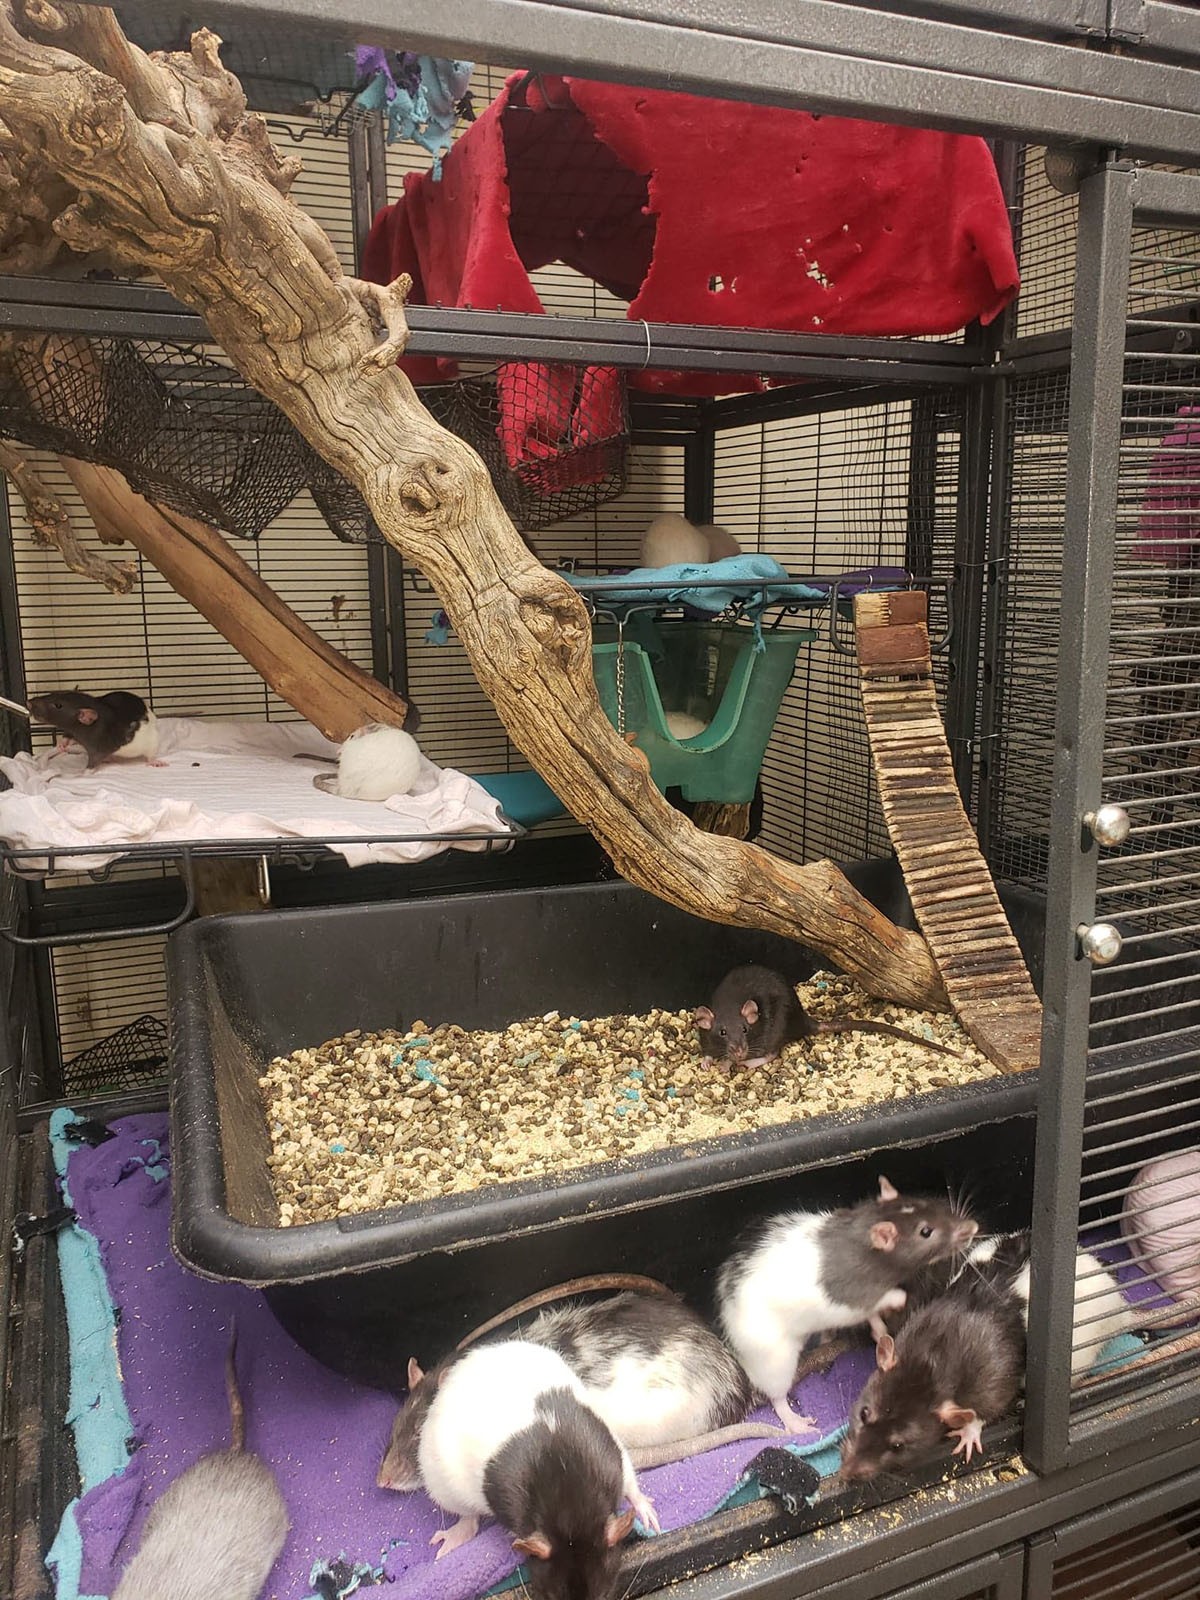 Michele busca utilizar dentro das gaiolas elementos que se pareçam com o habitat natural dos ratos, como galhos (Foto: Arquivo Pessoal/ Michele Raybon)